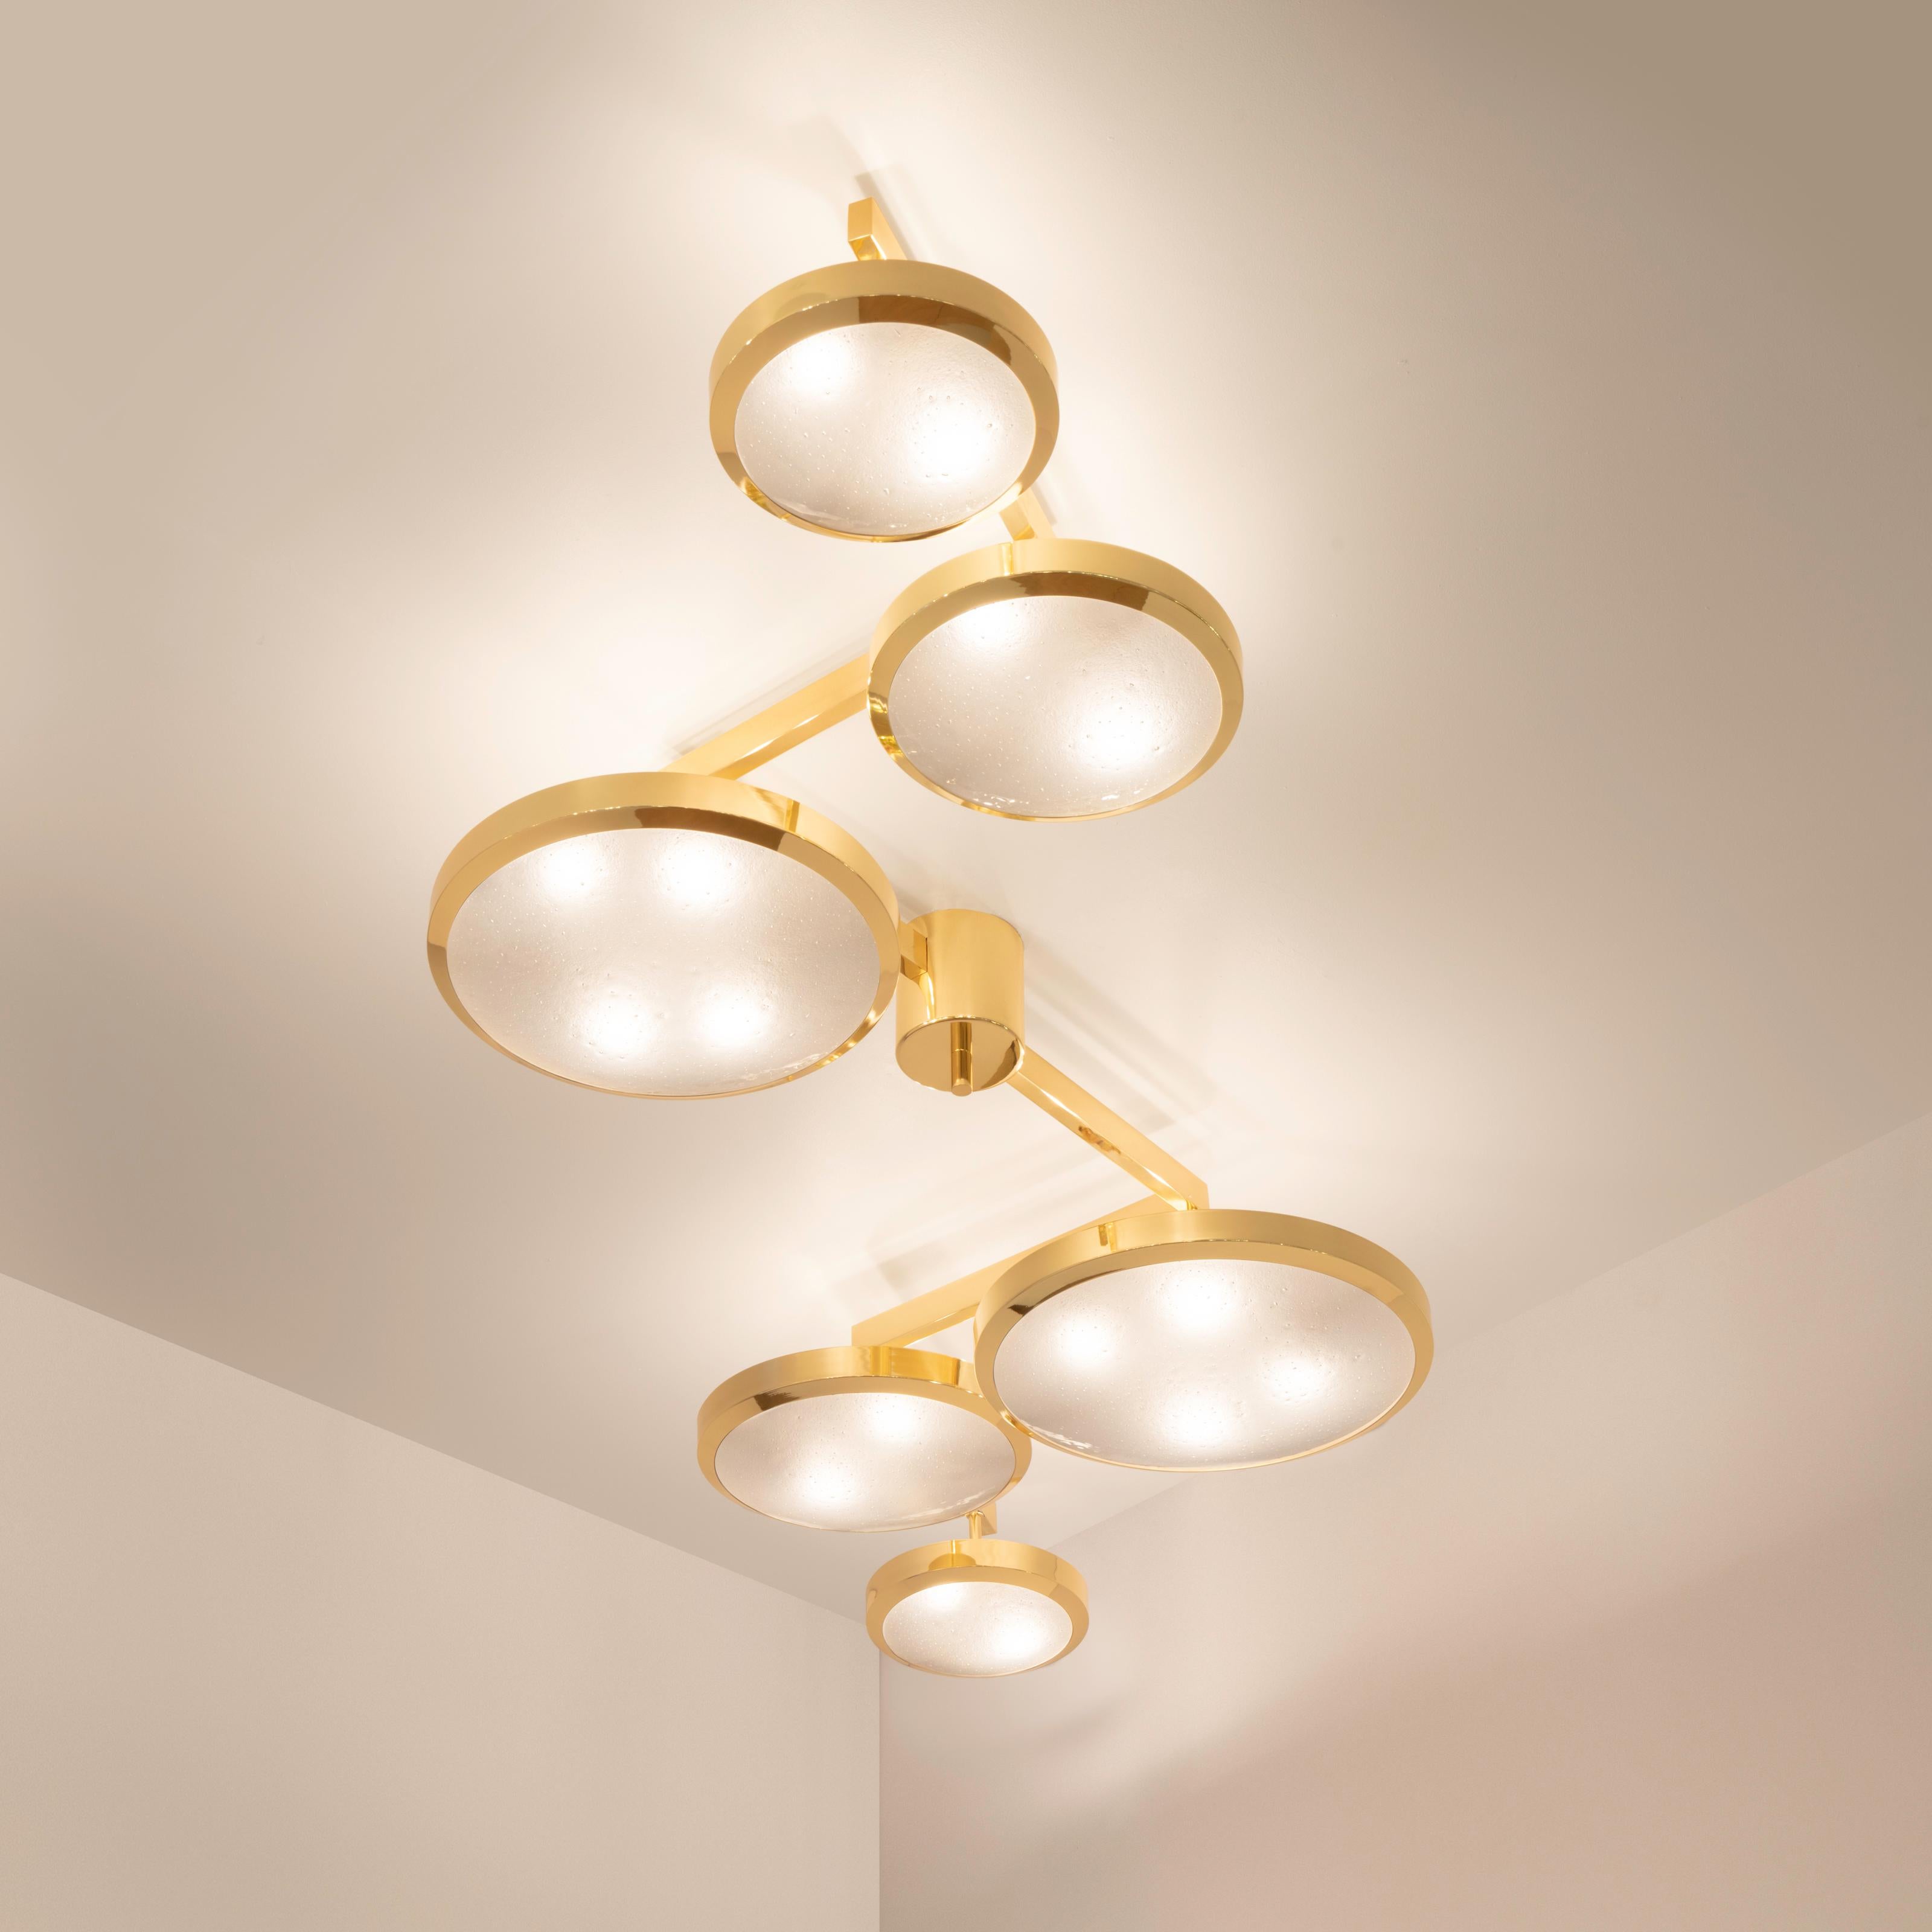 Modern Geometria Sospesa Ceiling Light by Gaspare Asaro-Brunito Nero Finish For Sale